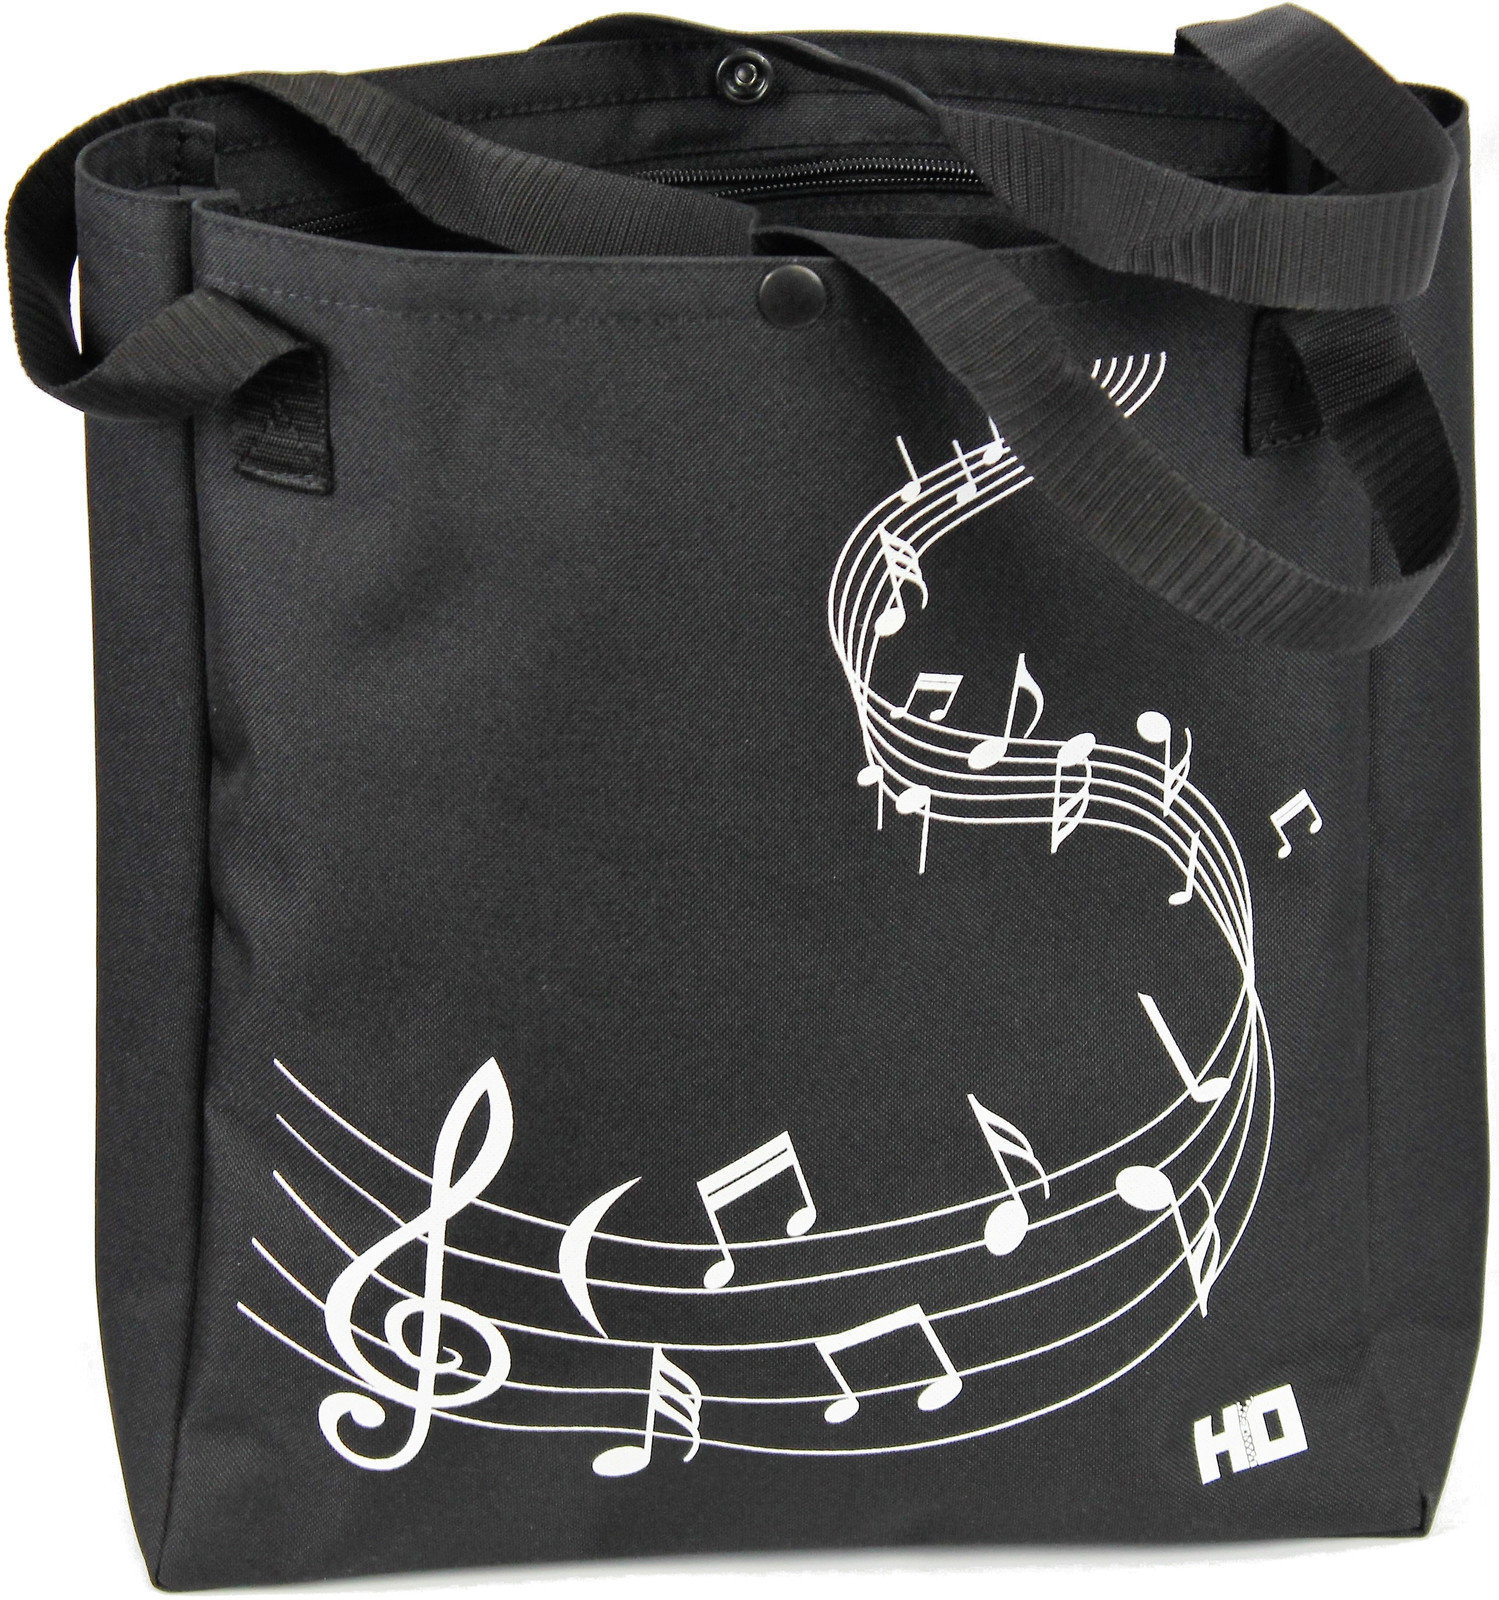 Shopping Bag Hudební Obaly H-O Melody Black-Black